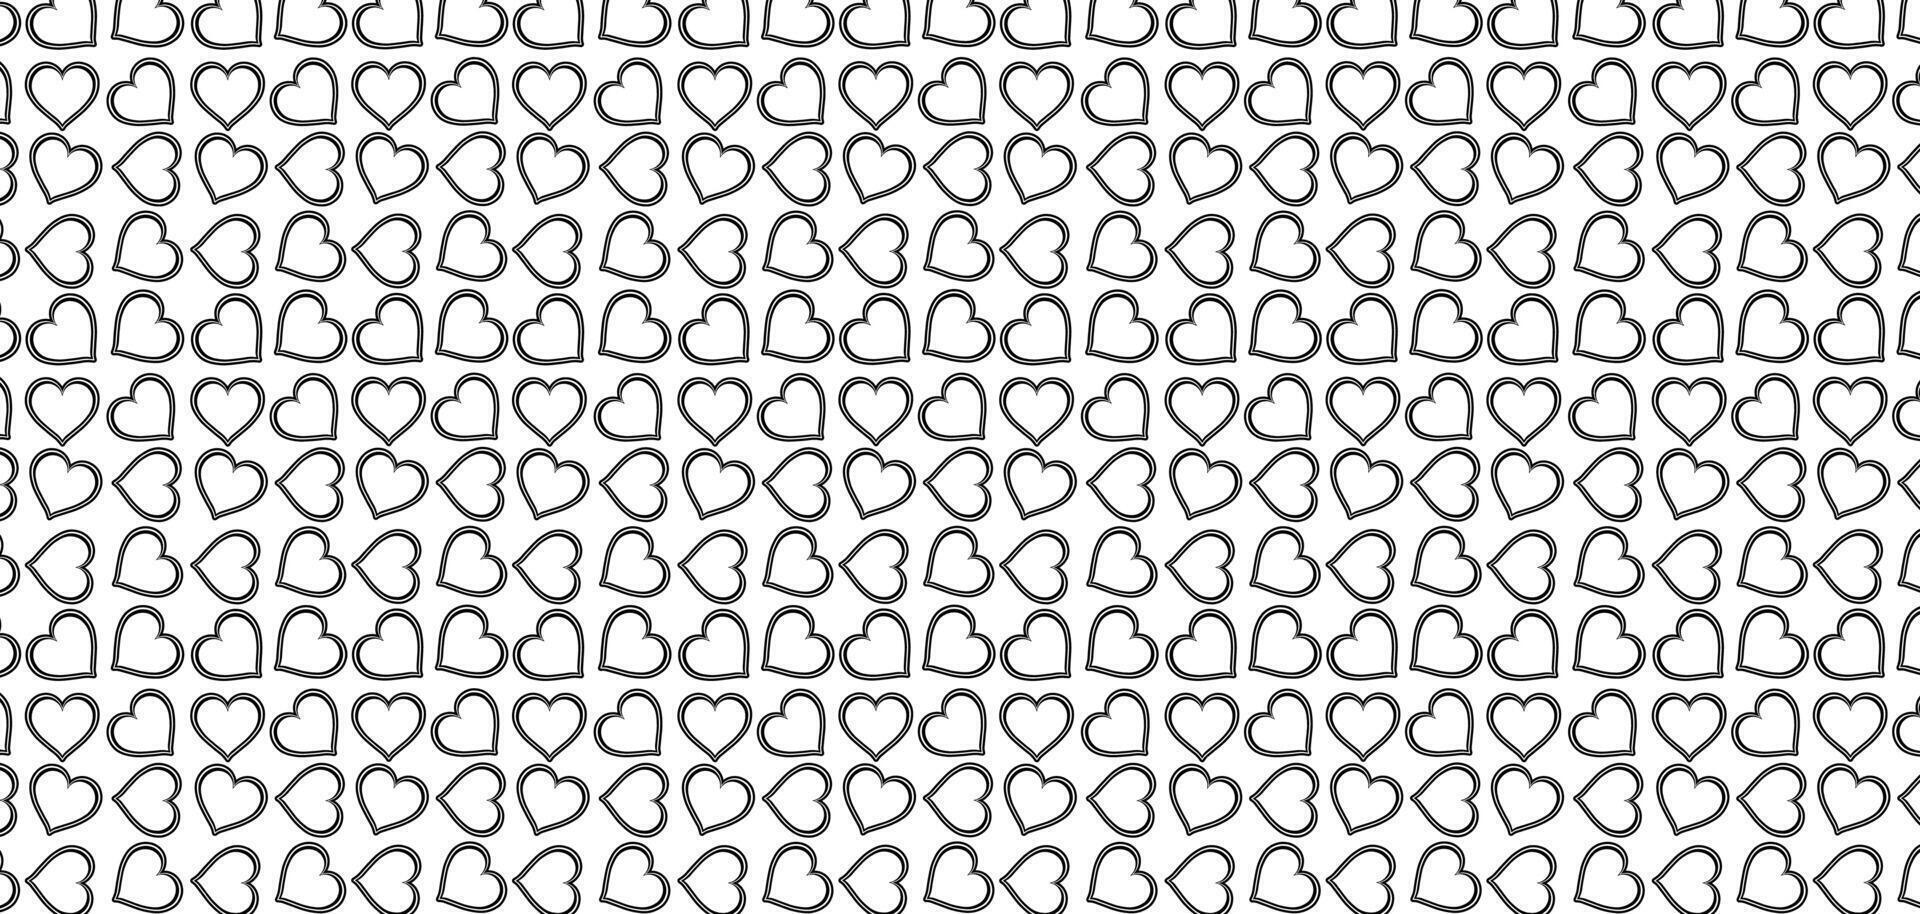 Hand gezeichnet Gekritzel Herzen gestalten schwarz Linie nahtlos Muster Herz auf Weiß abstrakt Hintergrund Vektor Illustration